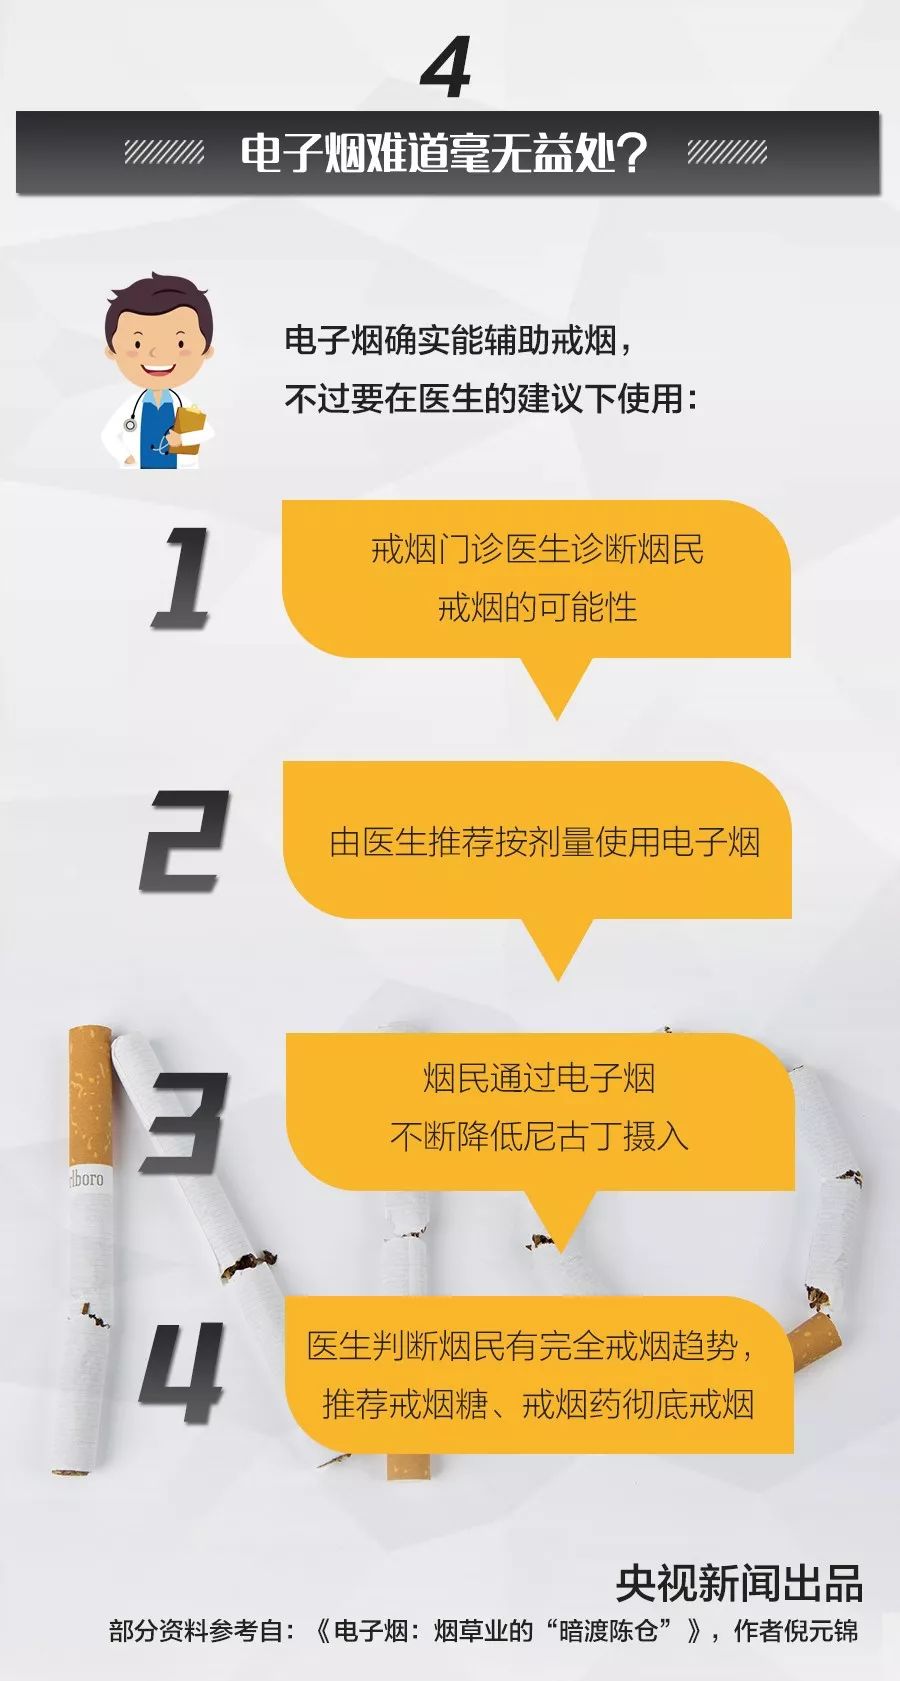 为什么杭州要明令禁止电子烟？电子烟究竟是什么？ 